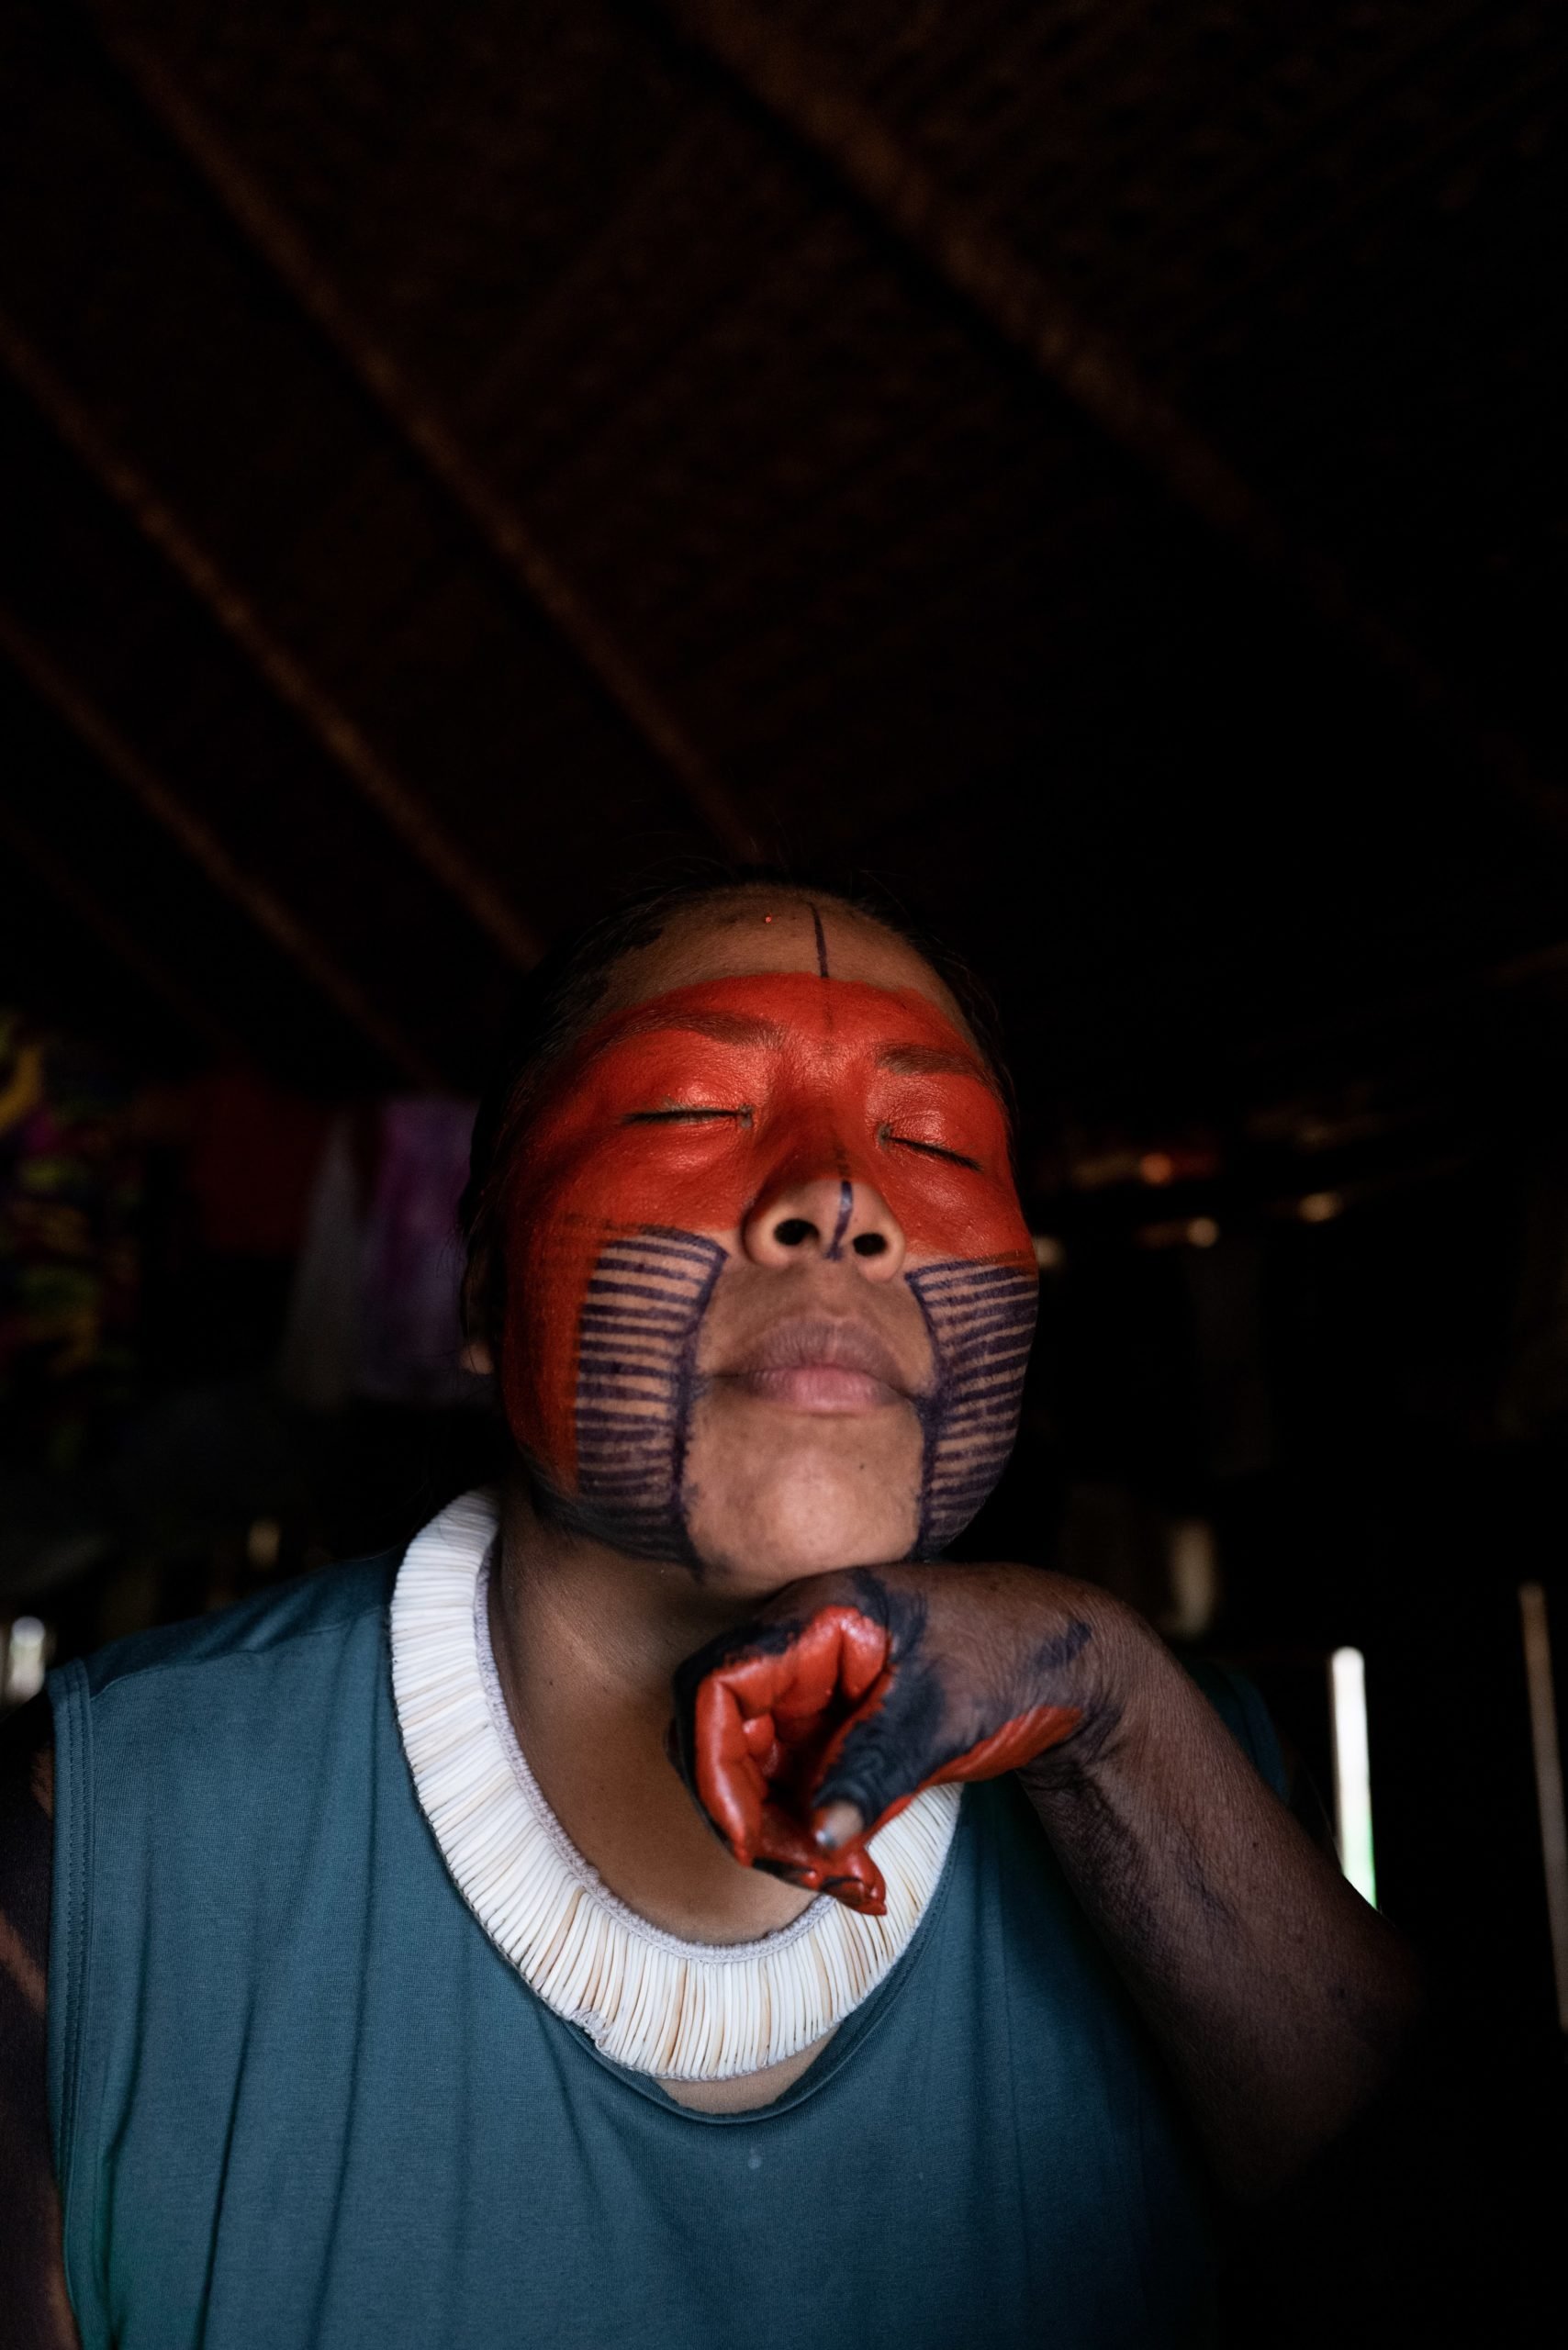  Mayalú får sitt ansikte målat med Achiote av en äldre kvinna från Metuktiresamhället. Foto: Alice Aedy 